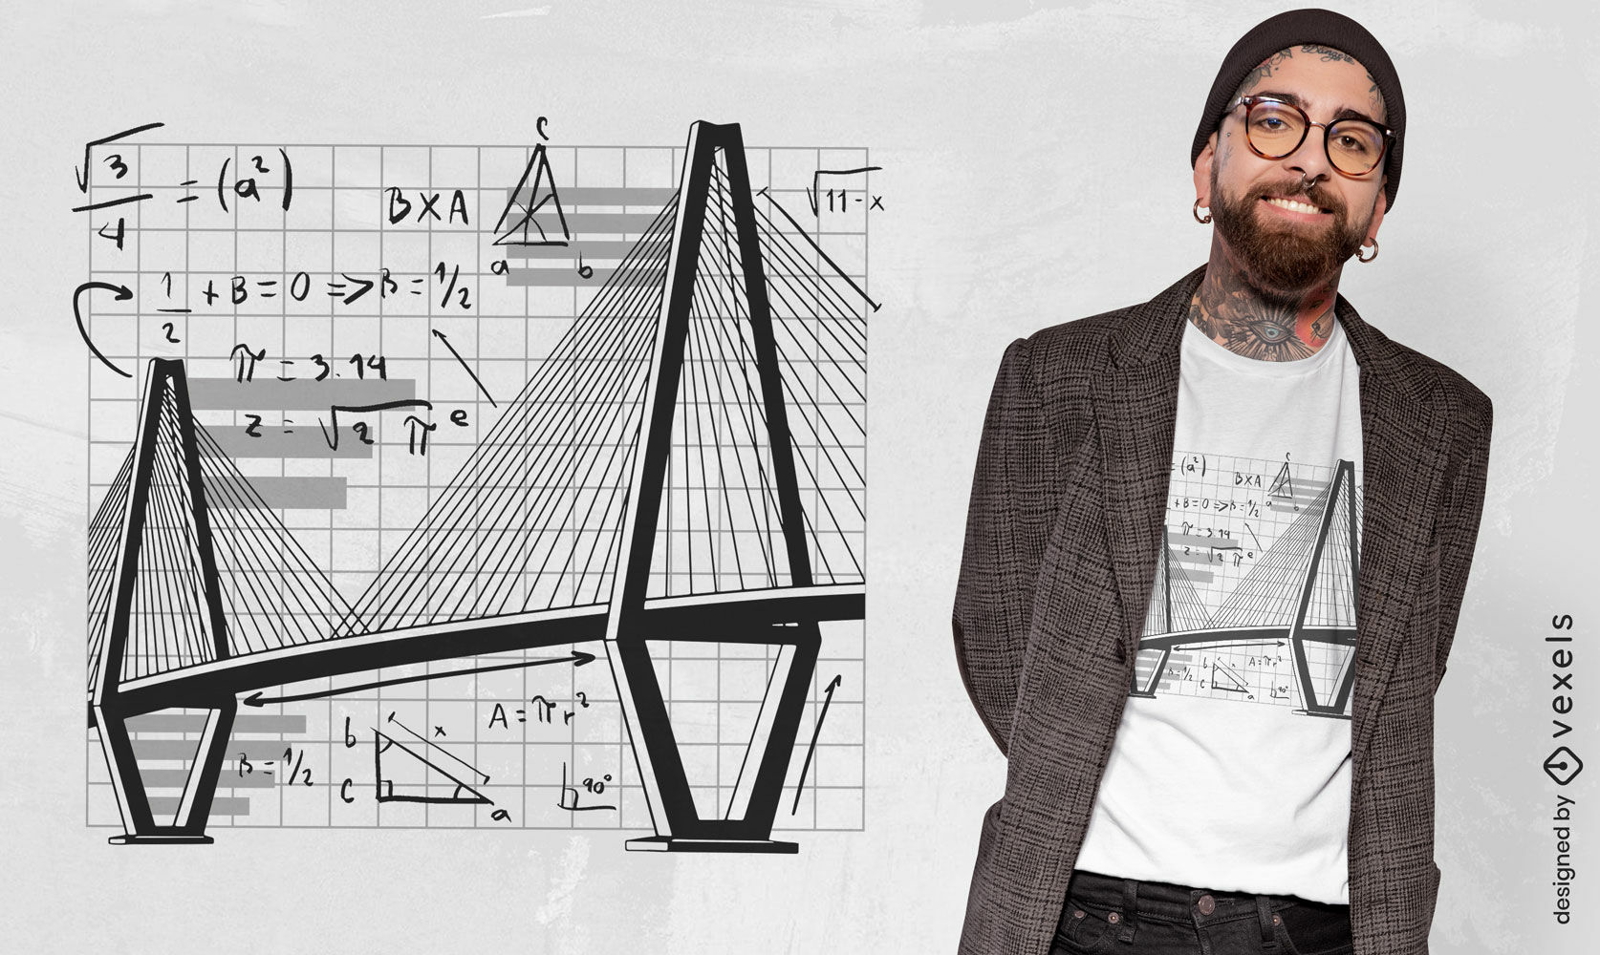 Dise?o de camiseta de ecuaciones matem?ticas de puente y ciencia.